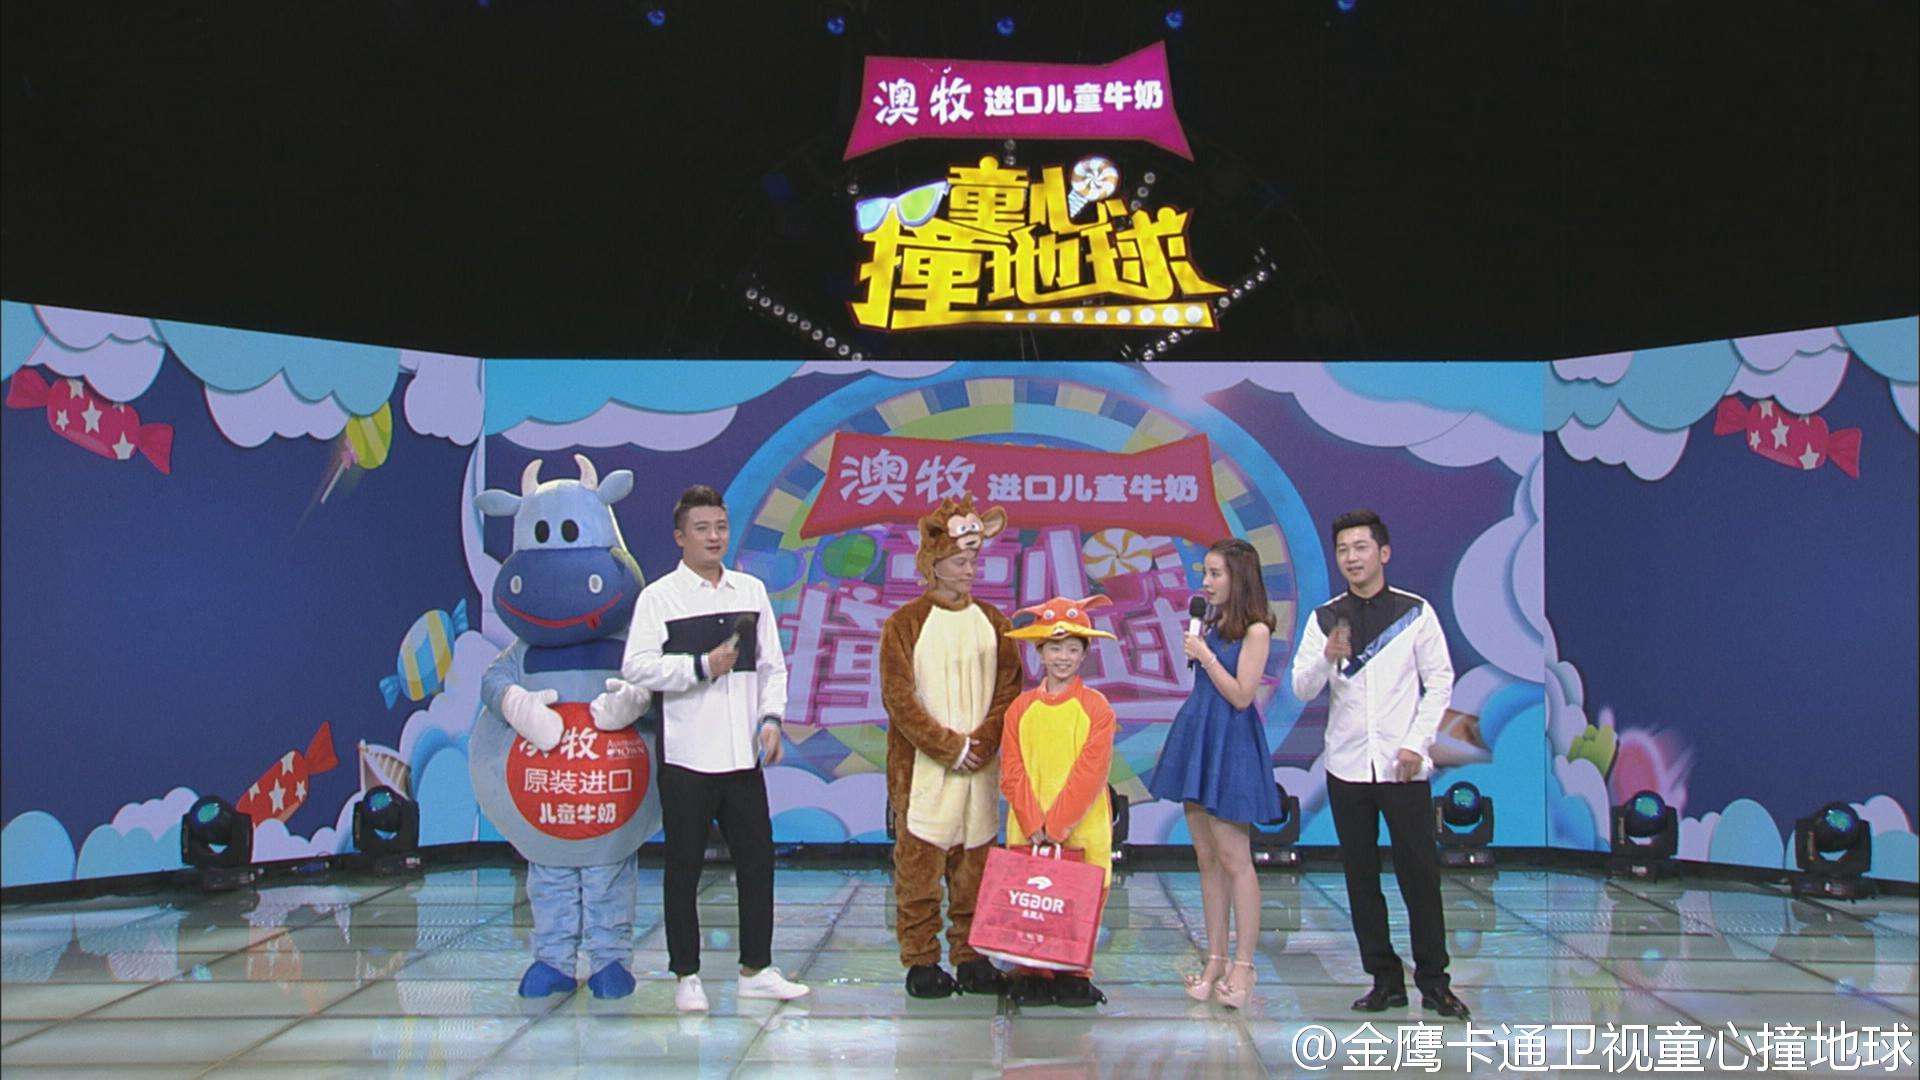 2017年6月13日電視台收視率排行榜,湖南衛視第一浙江衛視第六